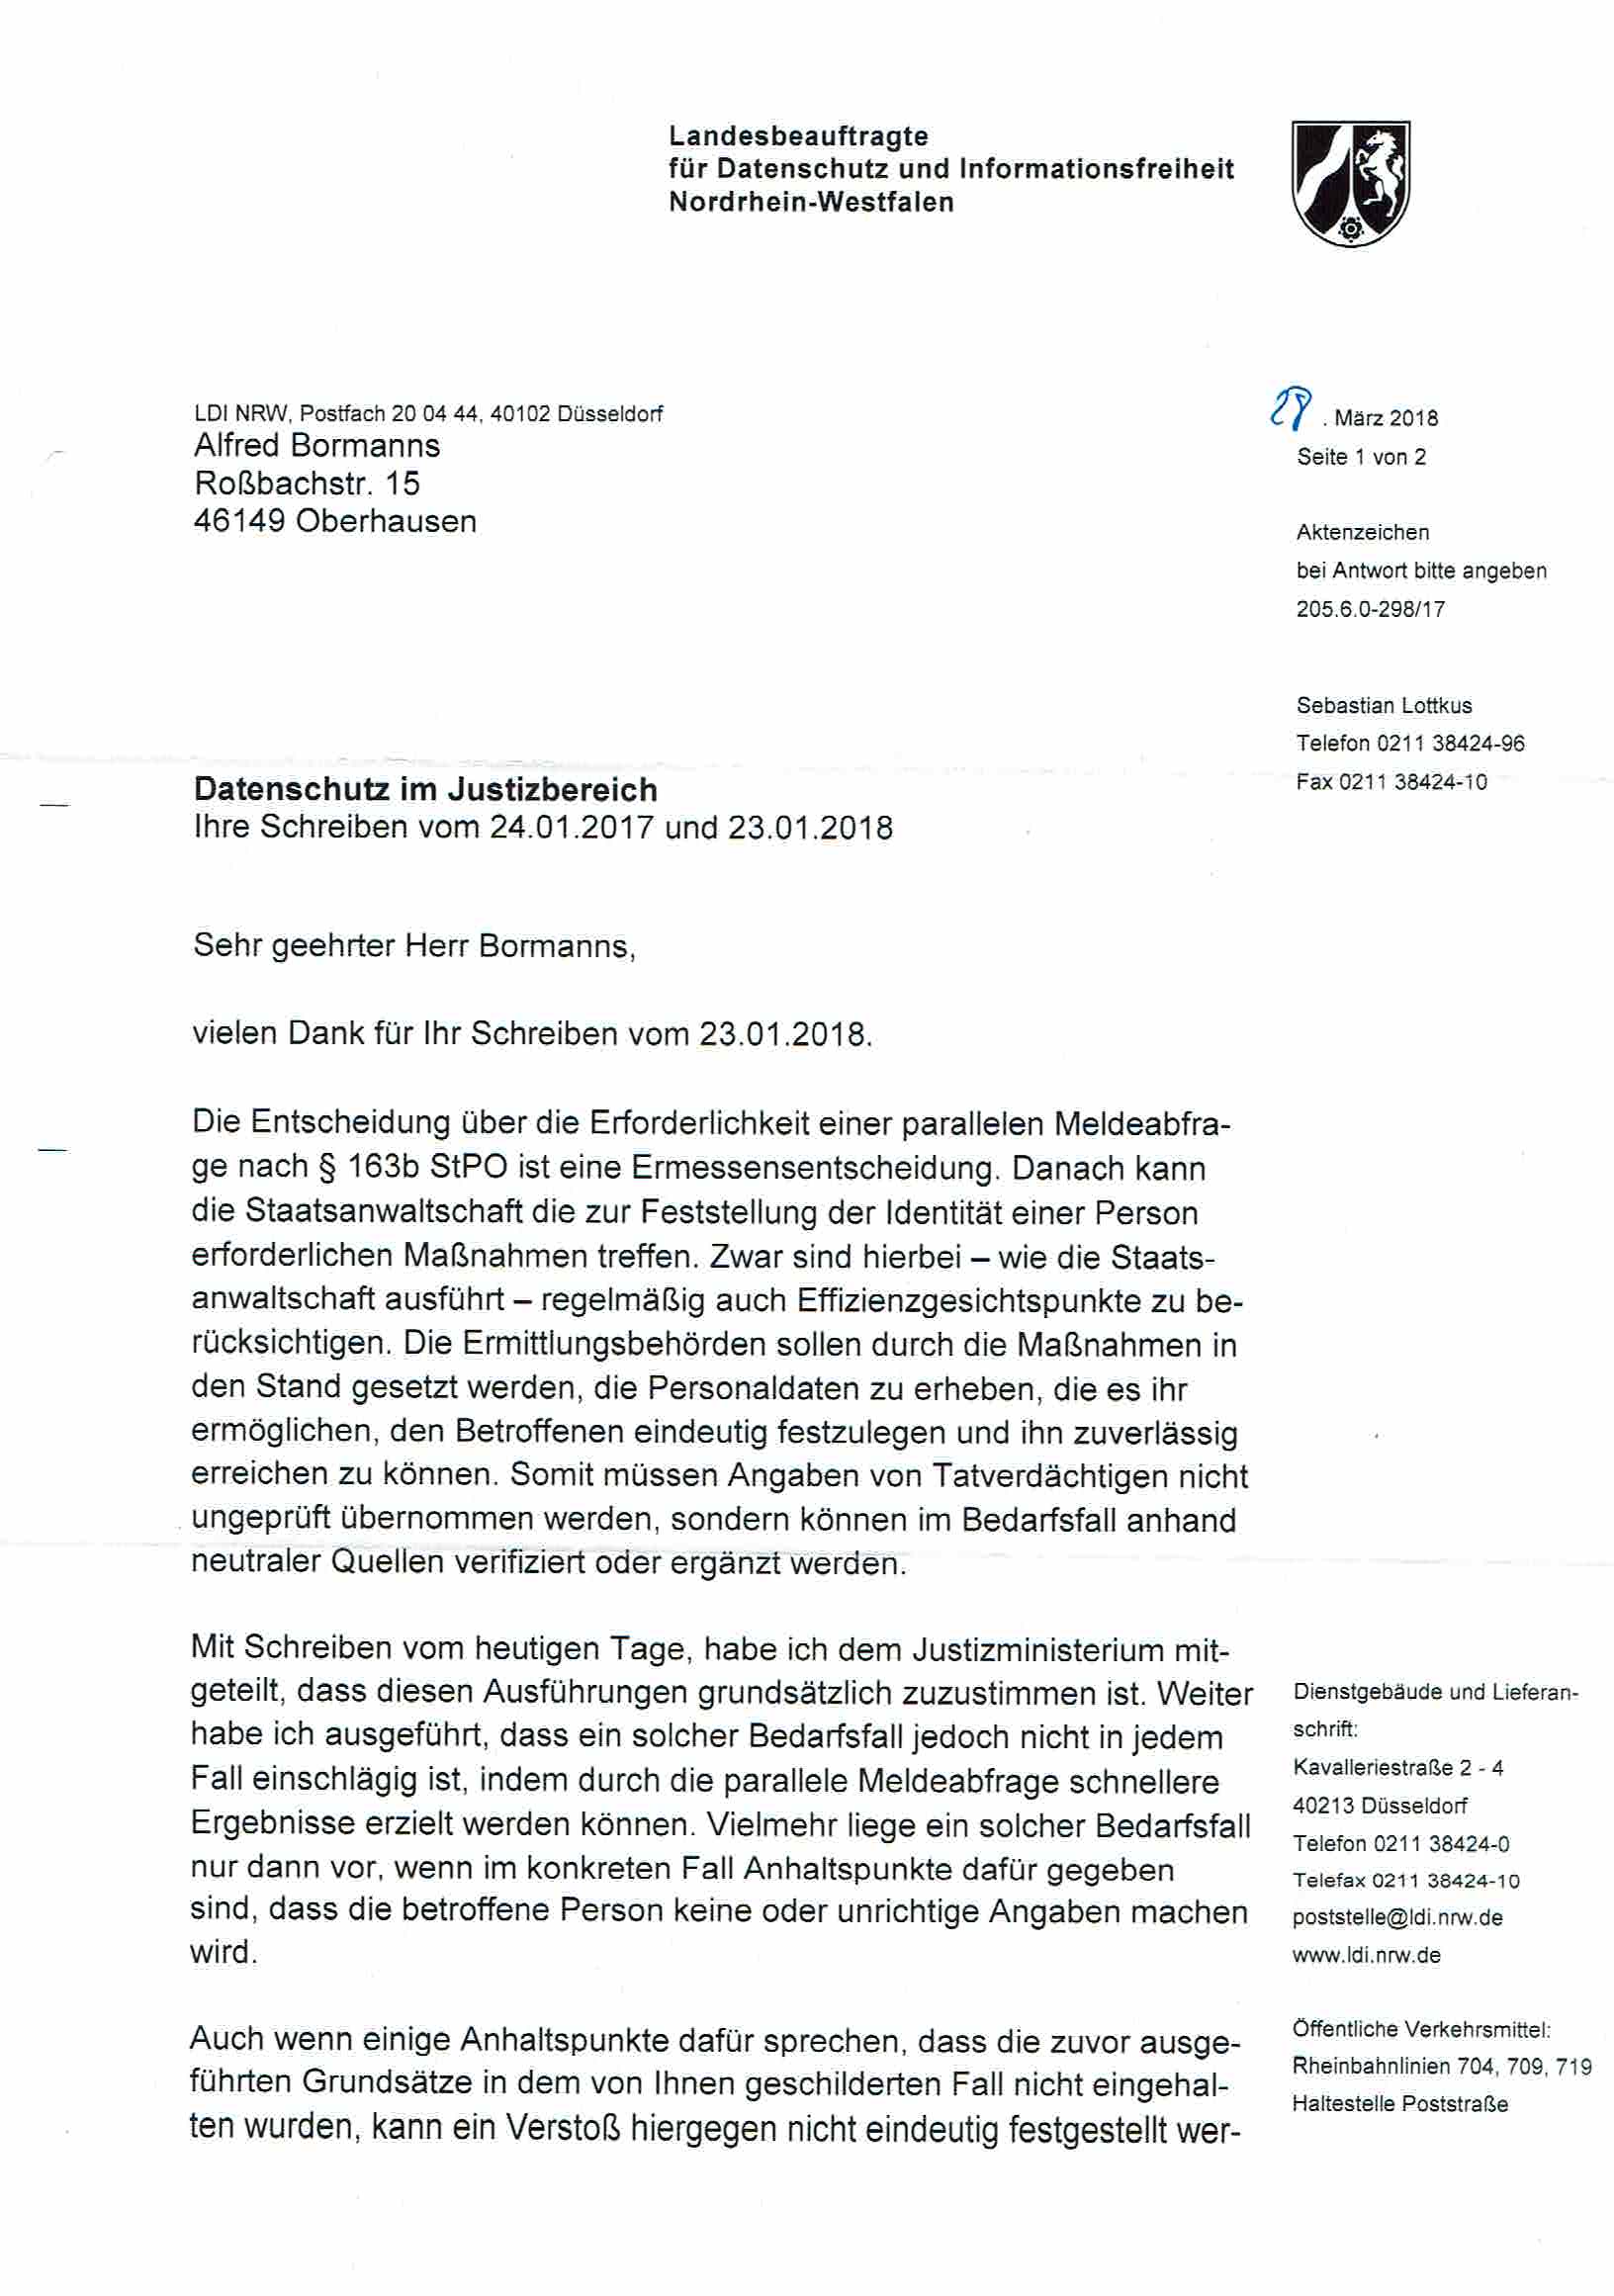 Bescheid der Landesbeauftragen für Datenschutz und Informationsfreiheit Nordrhein-Westfalen vom 28.03.2018, S. 1